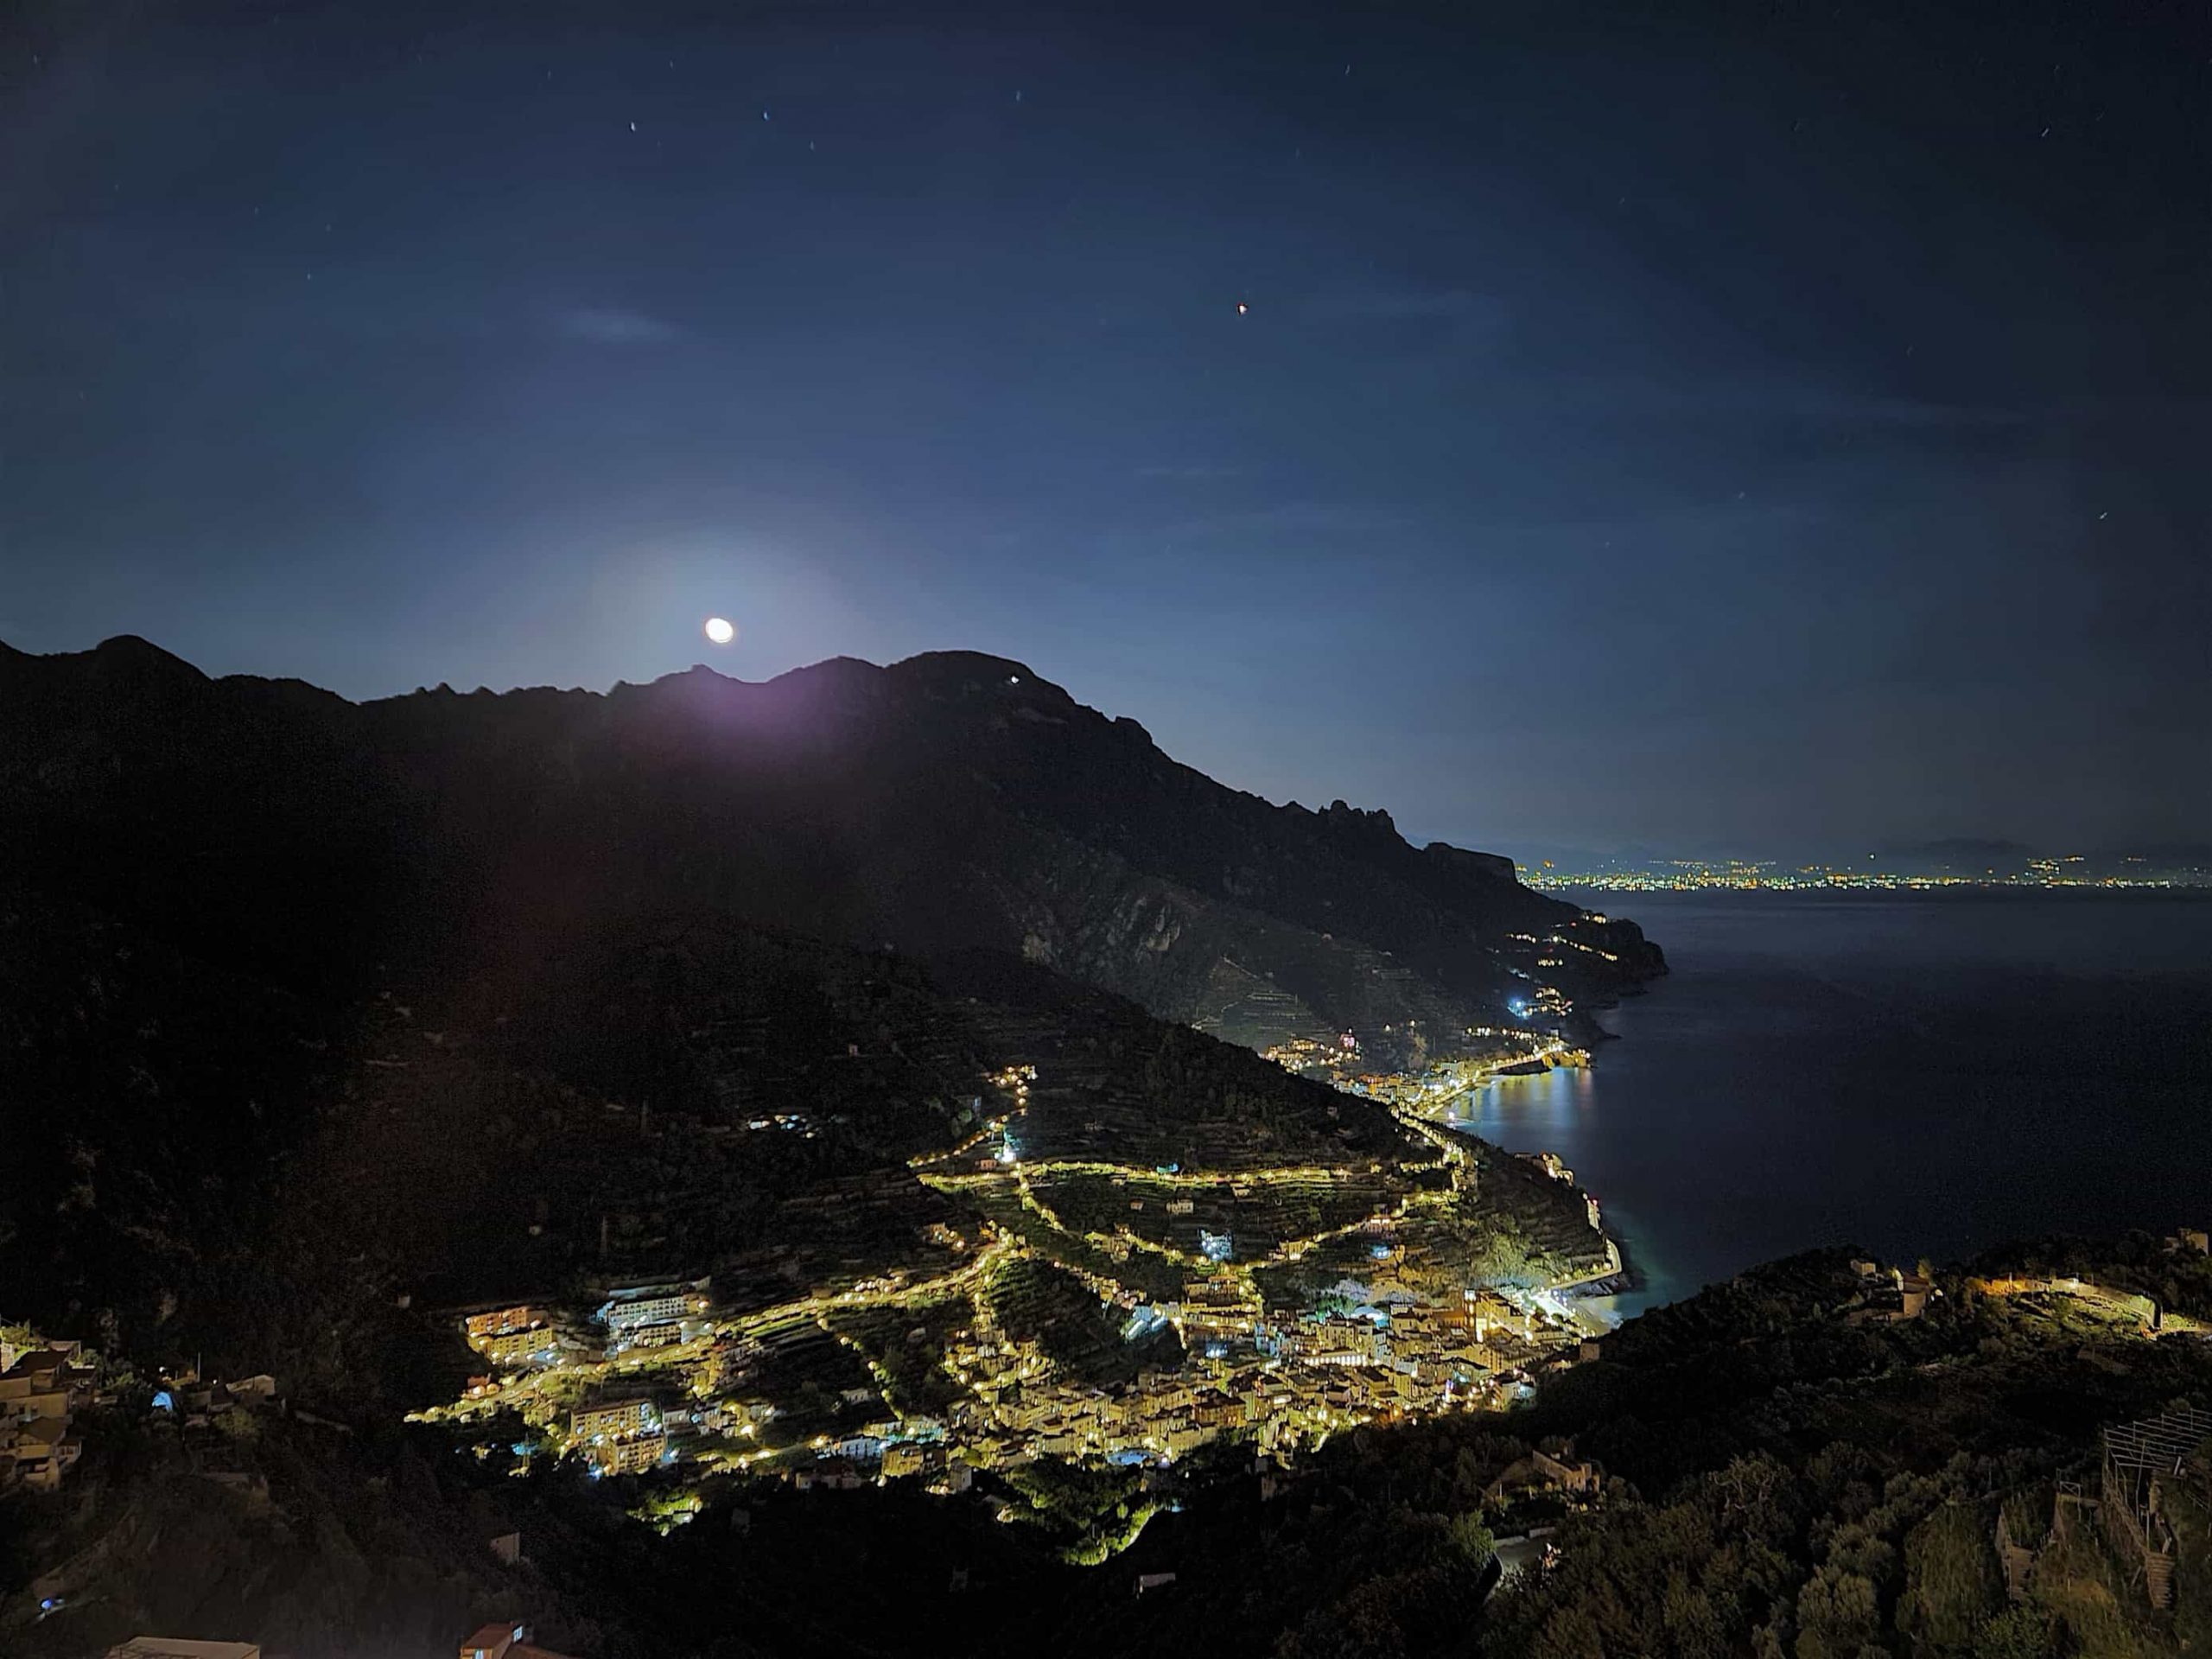 Foto notturna sul panorama della costiera Amalfitana dall'Hotel Parsifal a Ravello